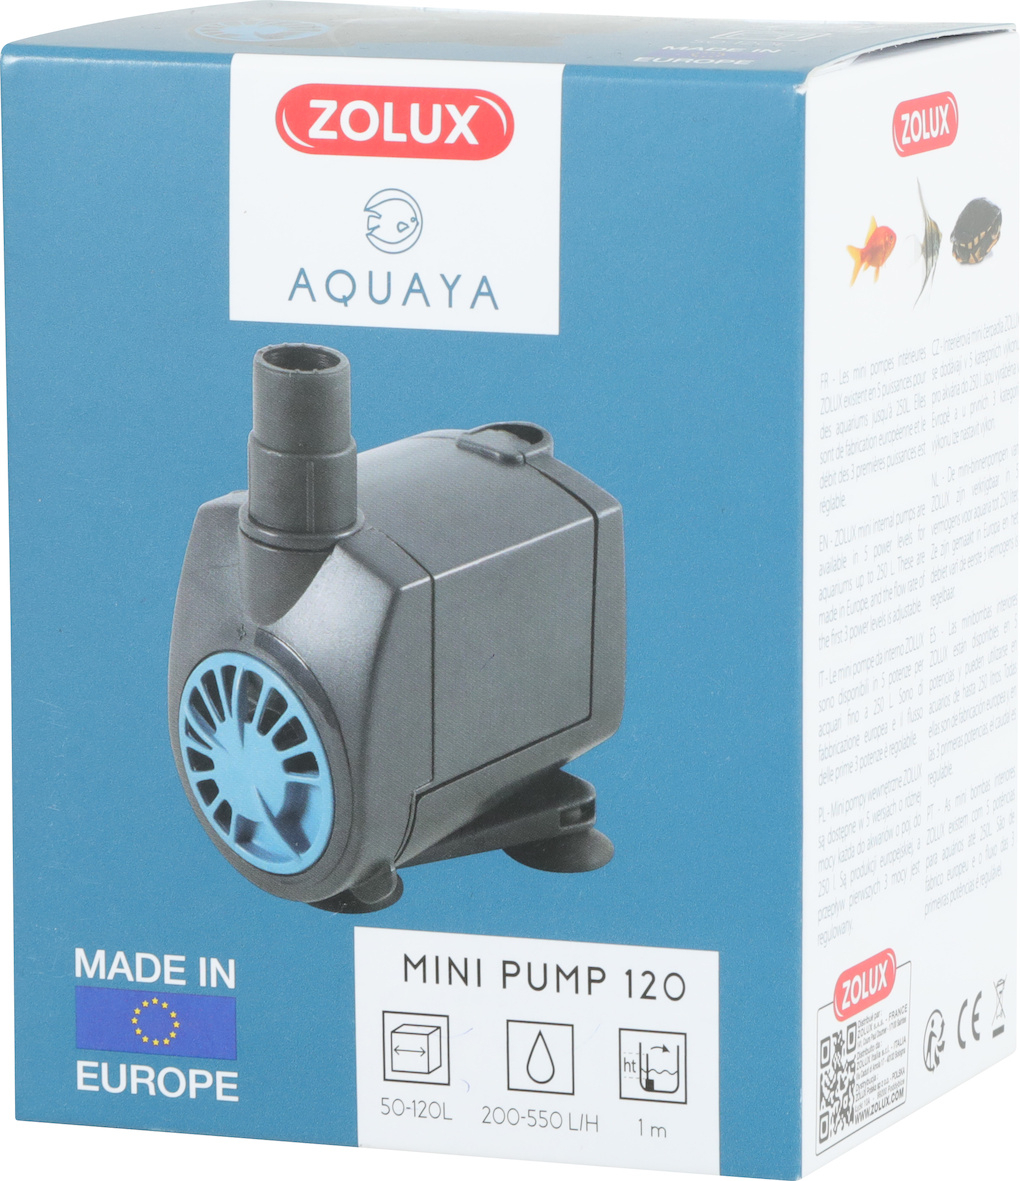 Aquaya 120 Minipumpe – Durchfluss von 200 bis 550 l/h